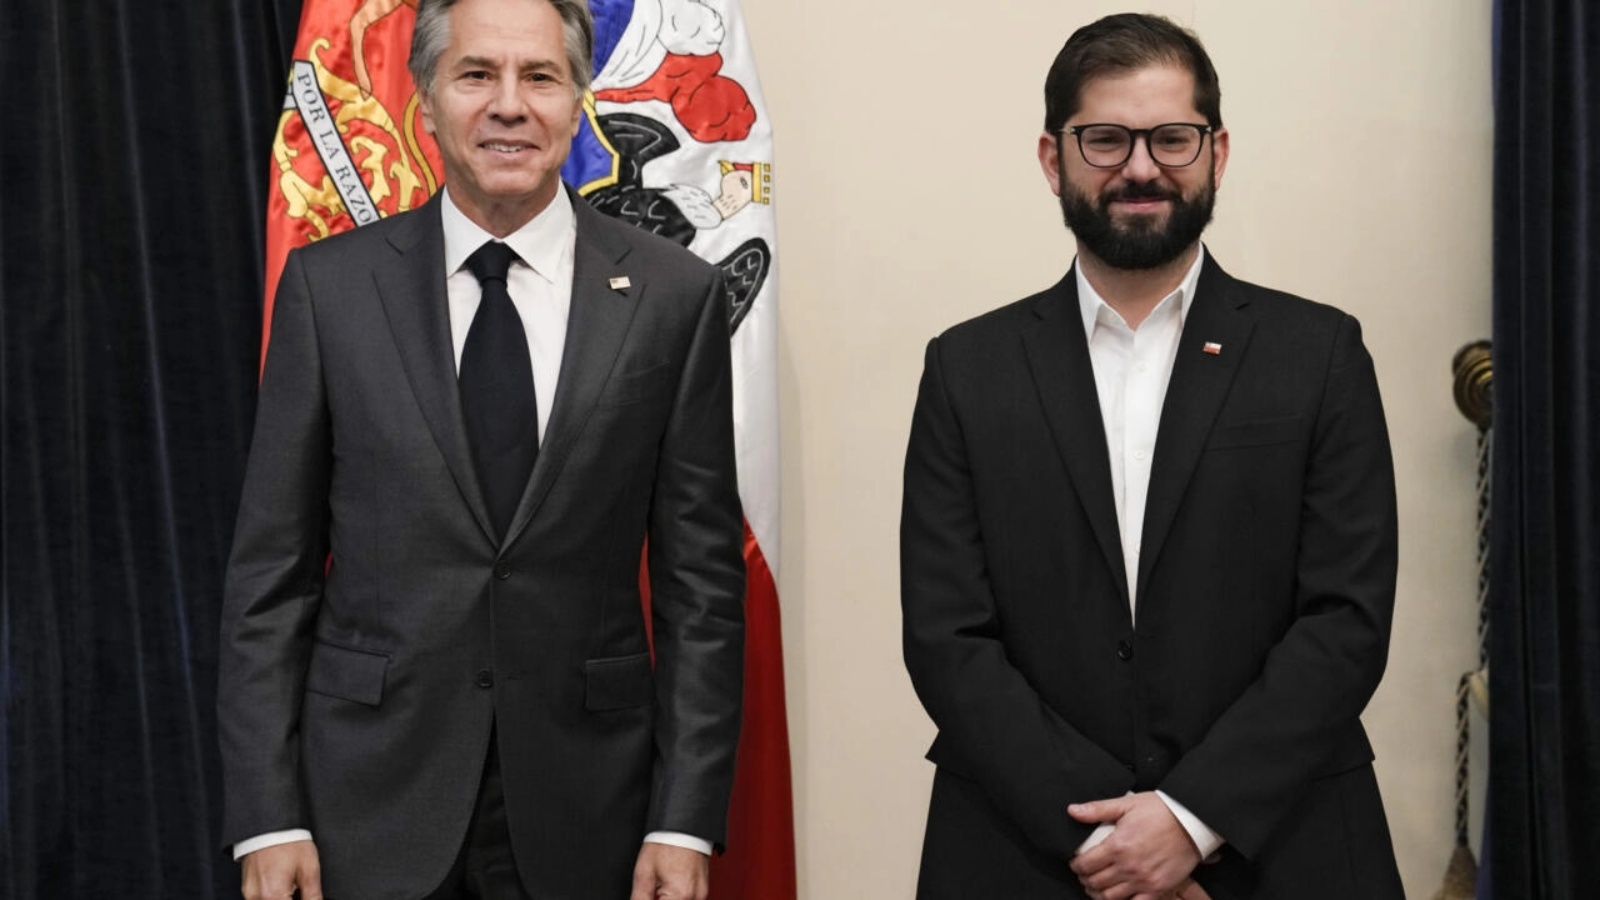 وزير الخارجية الأميركي انتوني بلينكن (يسار) والرئيس التشيلي غابريال بوريك في قصر مونيدا الرئاسي في العاصمة التشيلية سانتياغو في 05 أكتوبر 2022